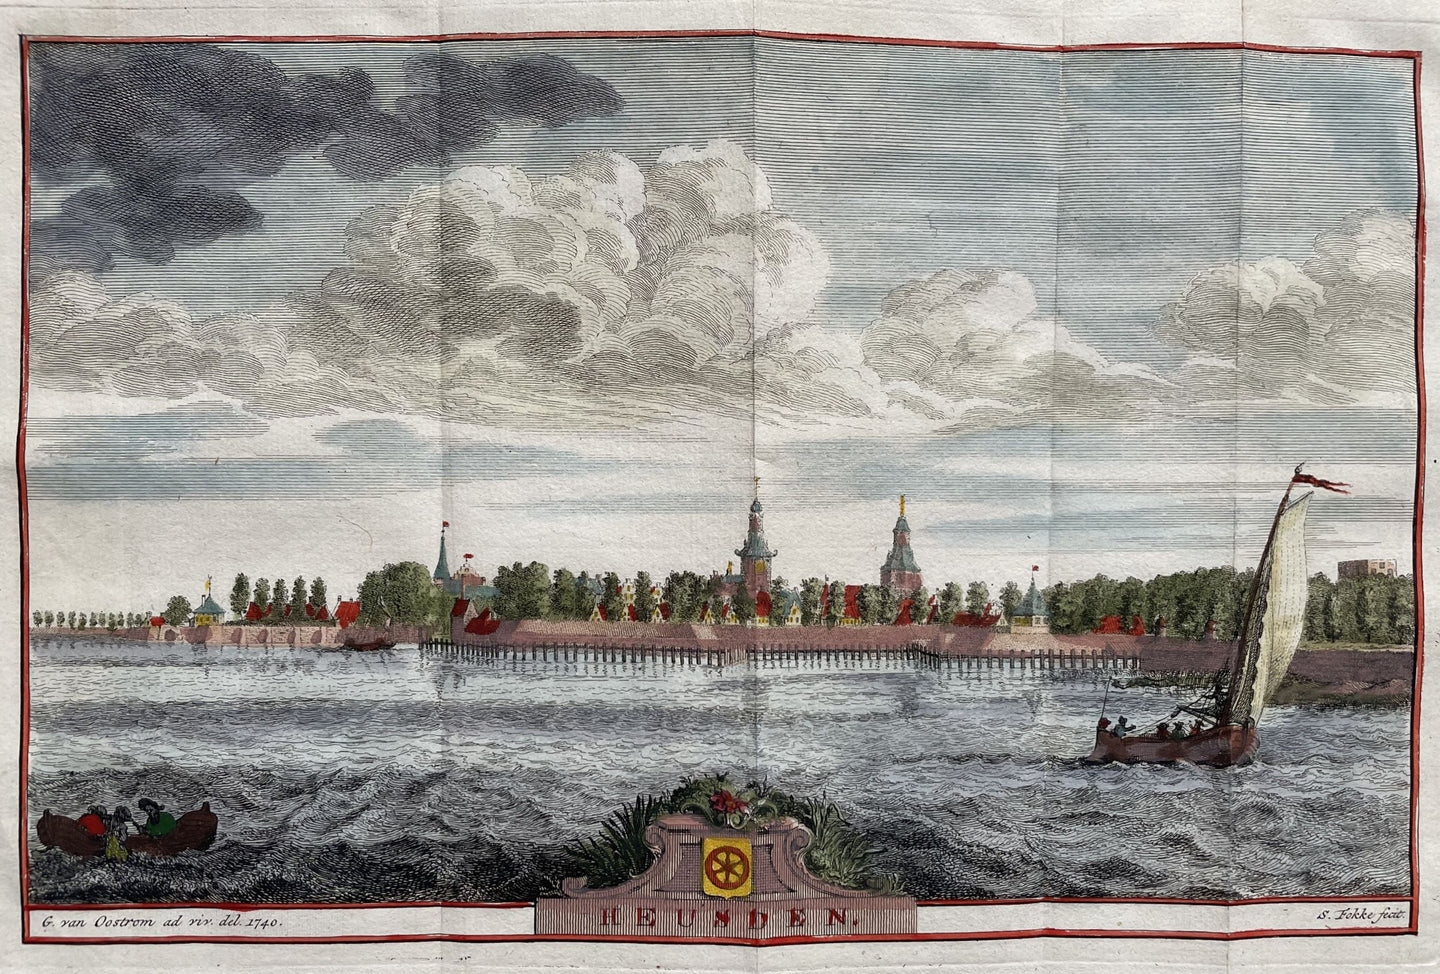 Heusden - S Fokke & G van Oostrom - 1743